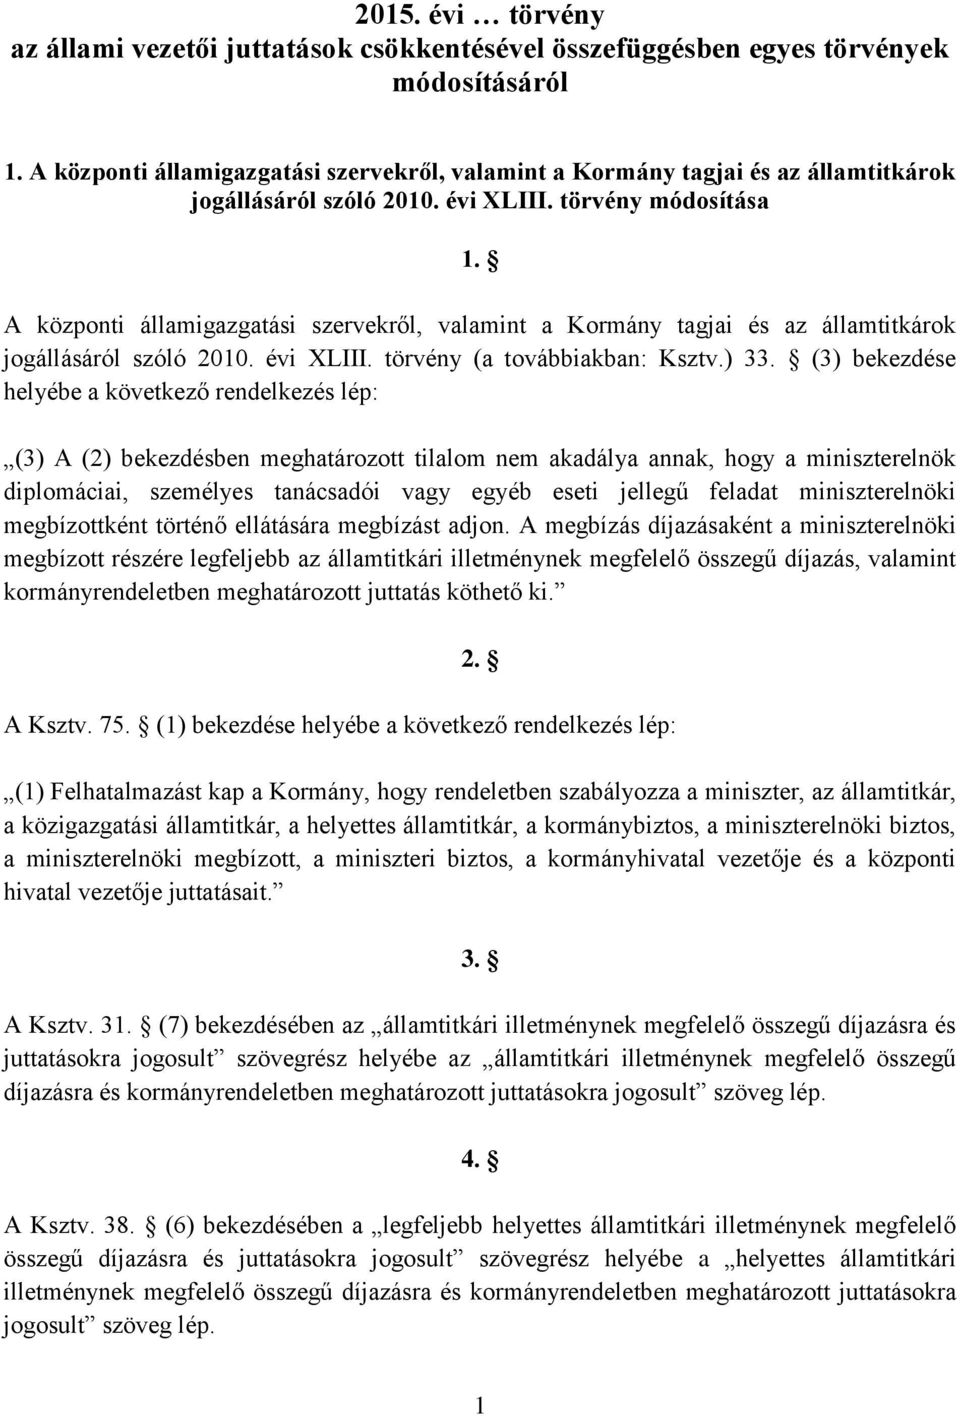 A központi államigazgatási szervekről, valamint a Kormány tagjai és az államtitkárok jogállásáról szóló 2010. évi XLIII. törvény (a továbbiakban: Ksztv.) 33.